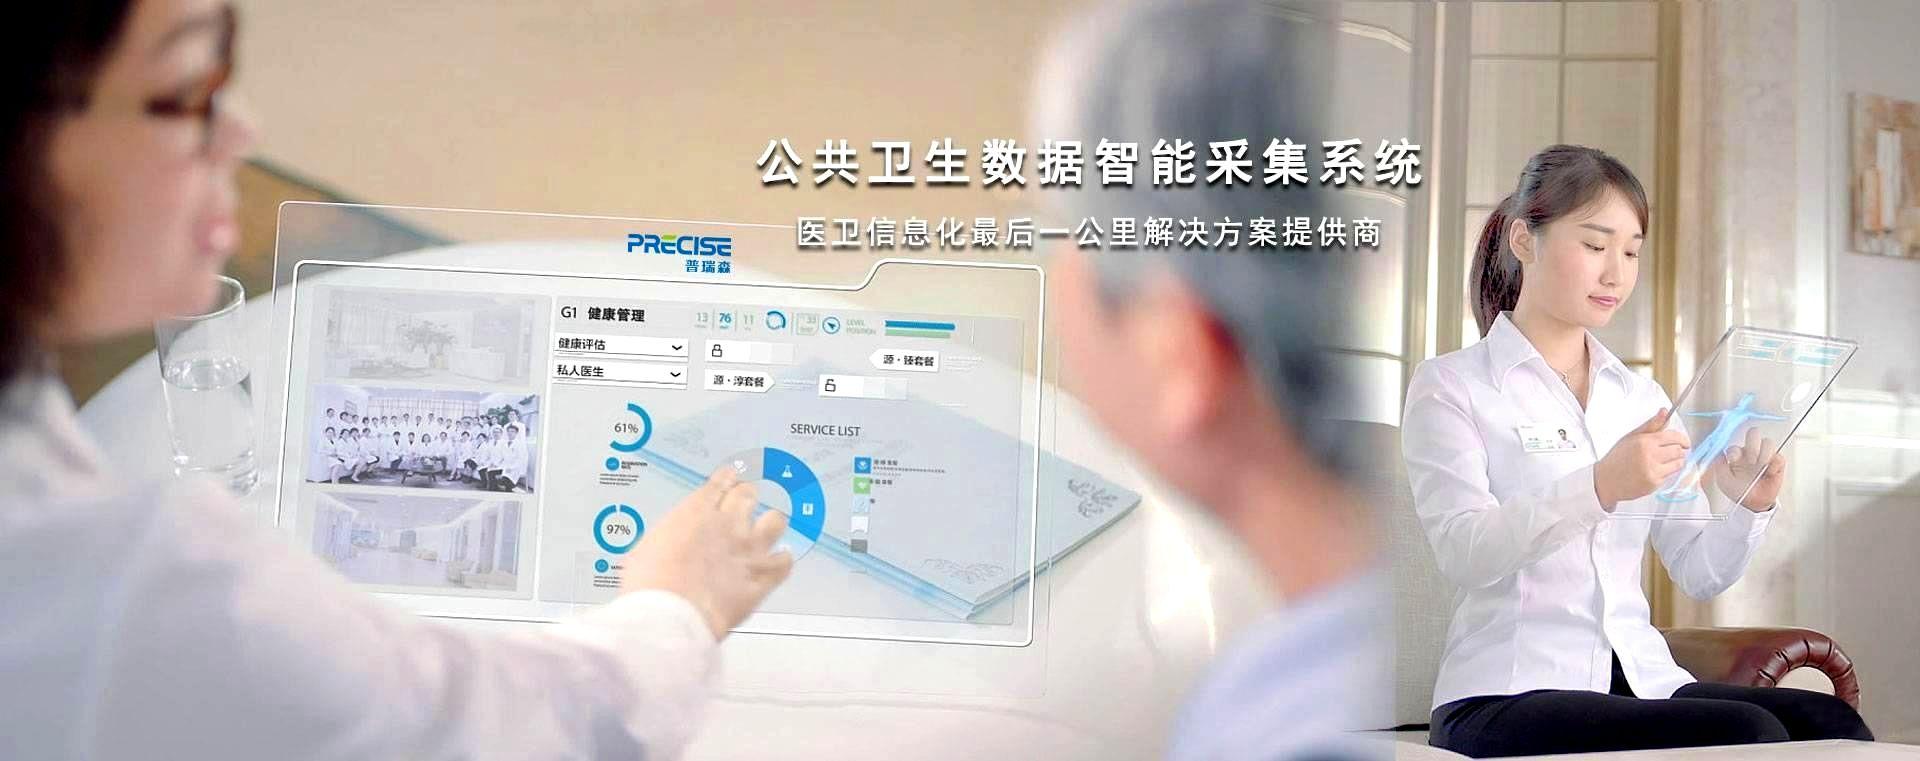 致力科技创新 服务健康中国、智慧公共卫生整体解决方案